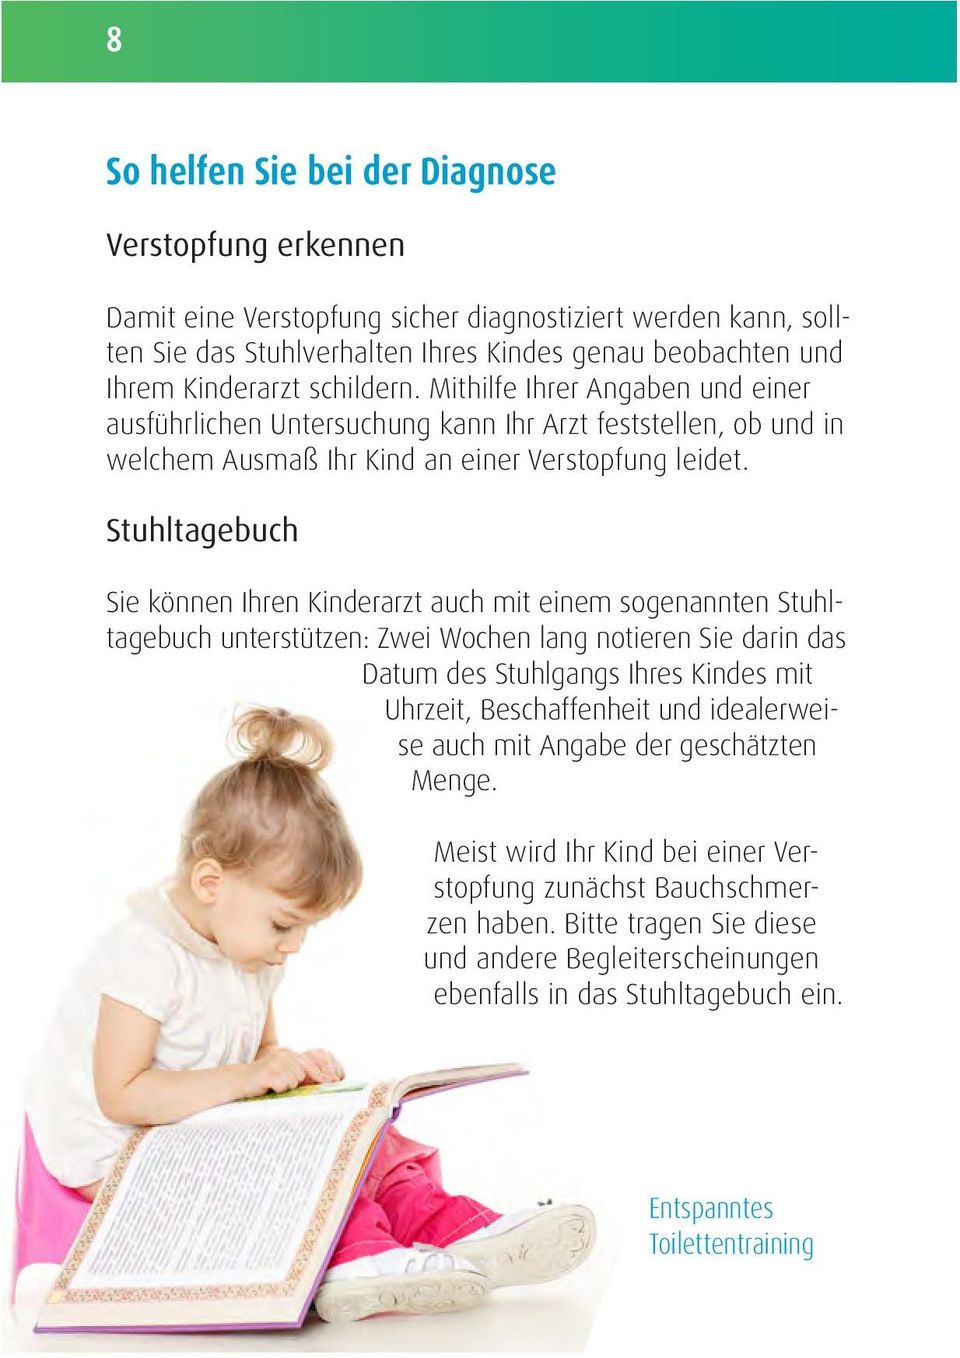 Stuhltagebuch Sie können Ihren Kinderarzt auch mit einem sogenannten Stuhltagebuch unterstützen: Zwei Wochen lang notieren Sie darin das Datum des Stuhlgangs Ihres Kindes mit Uhrzeit, Beschaffenheit